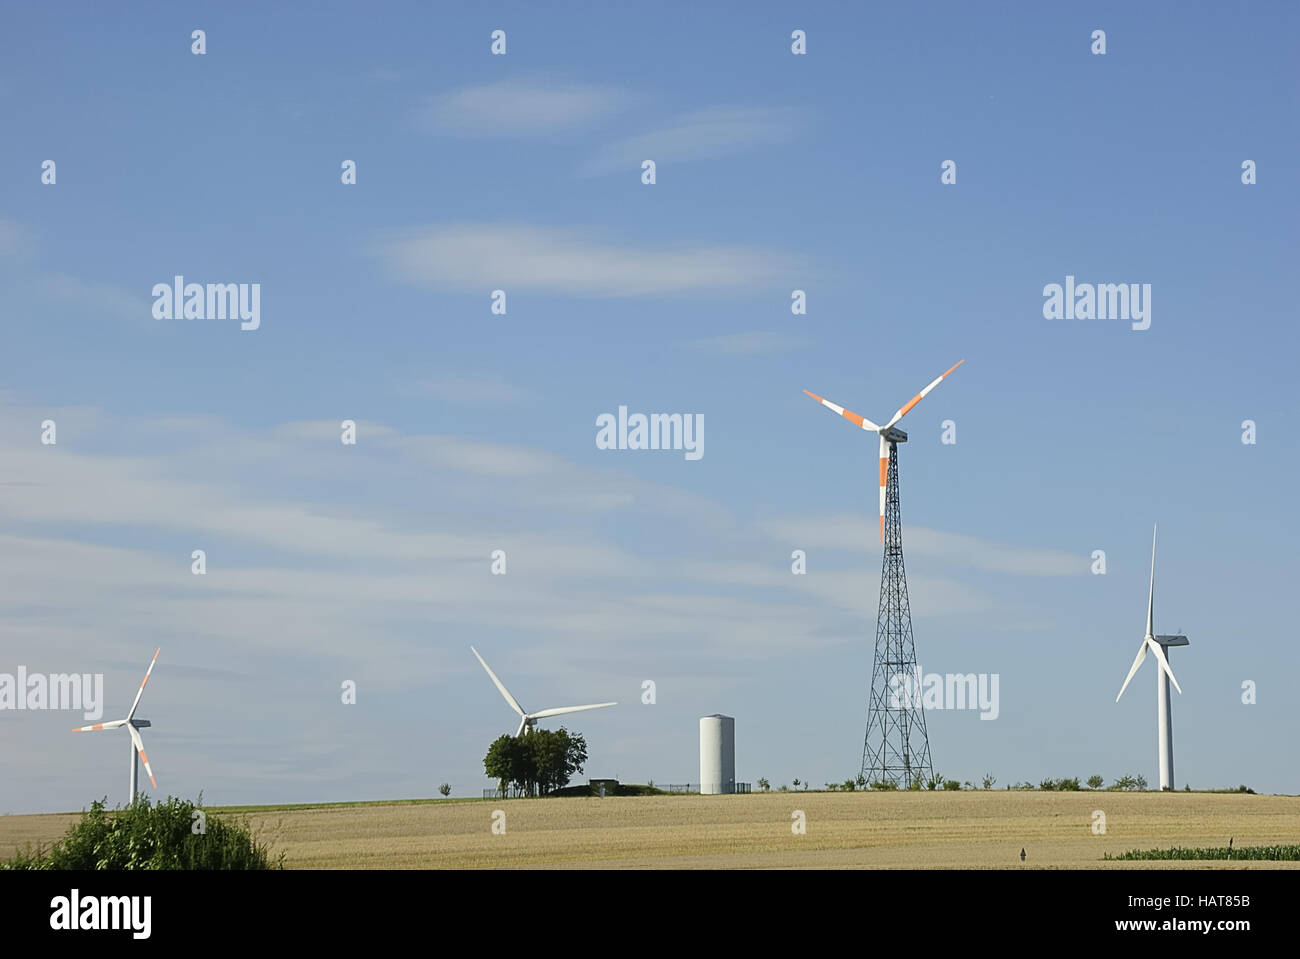 Getreide+windrad- cereali+turbine eoliche Foto Stock